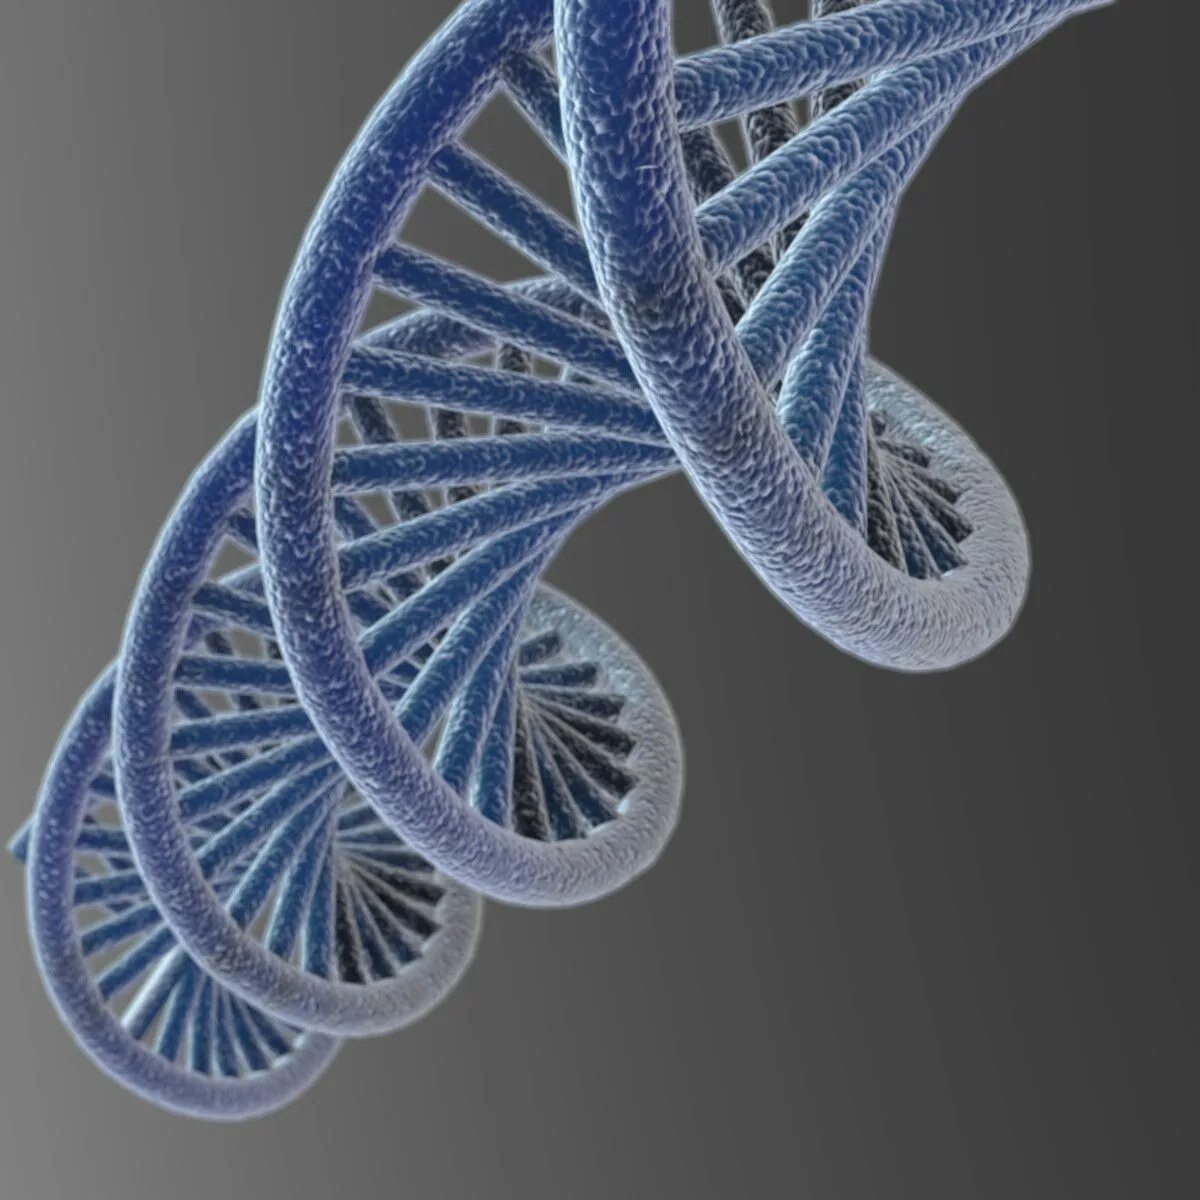 ДНК 3д модель. DNA 3d model. DNK model 3d модель. Молекула ДНК 3d.